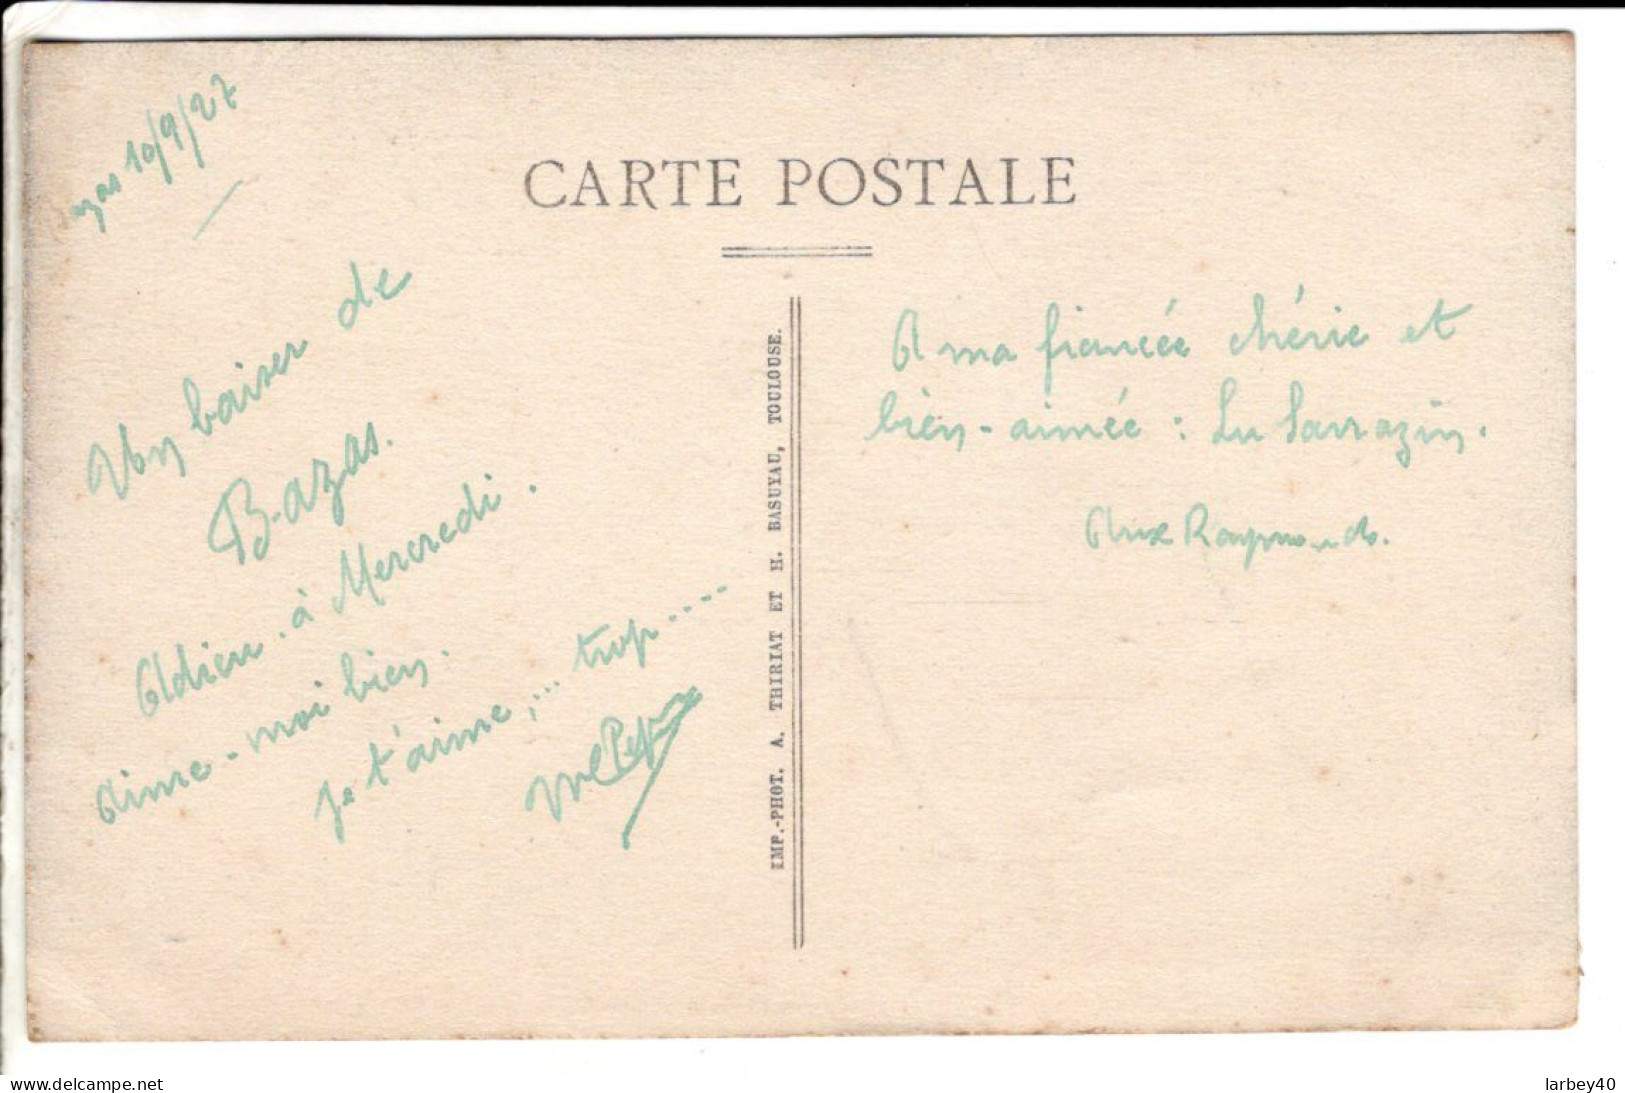 33 - Bazas Promenade De La Plateforme - Cartes Postales Ancienne - Bazas